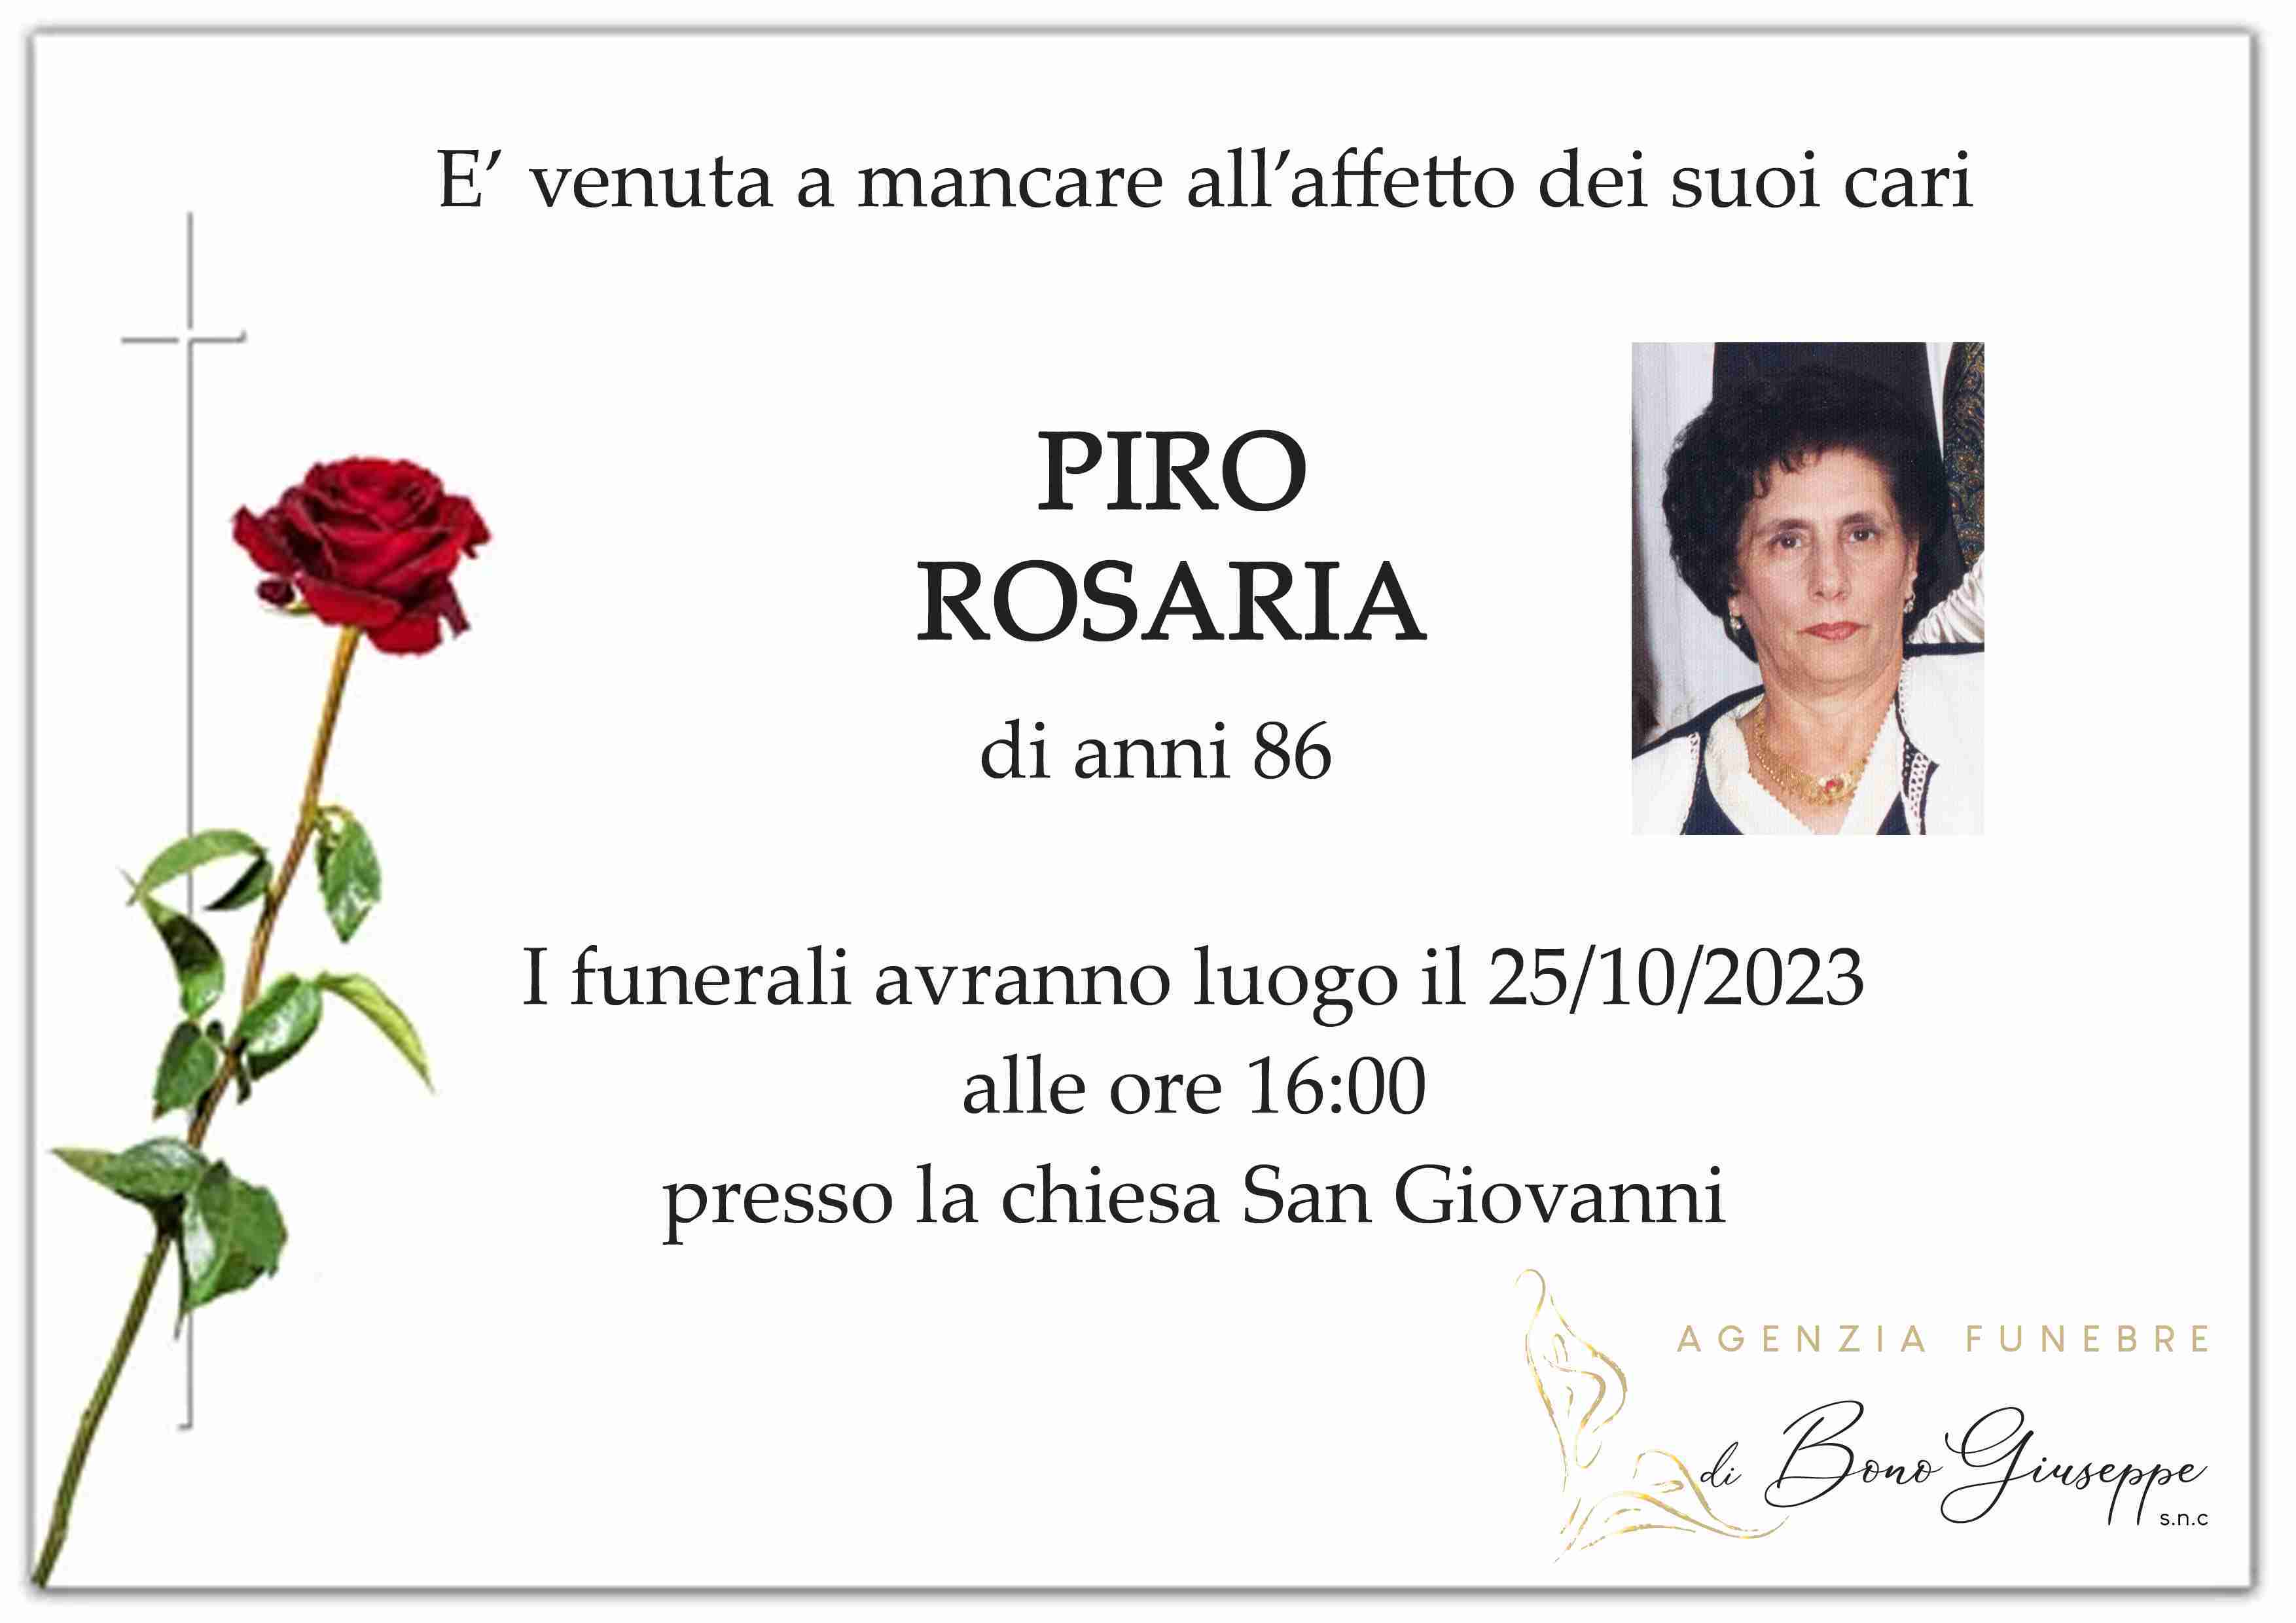 Rosaria Piro